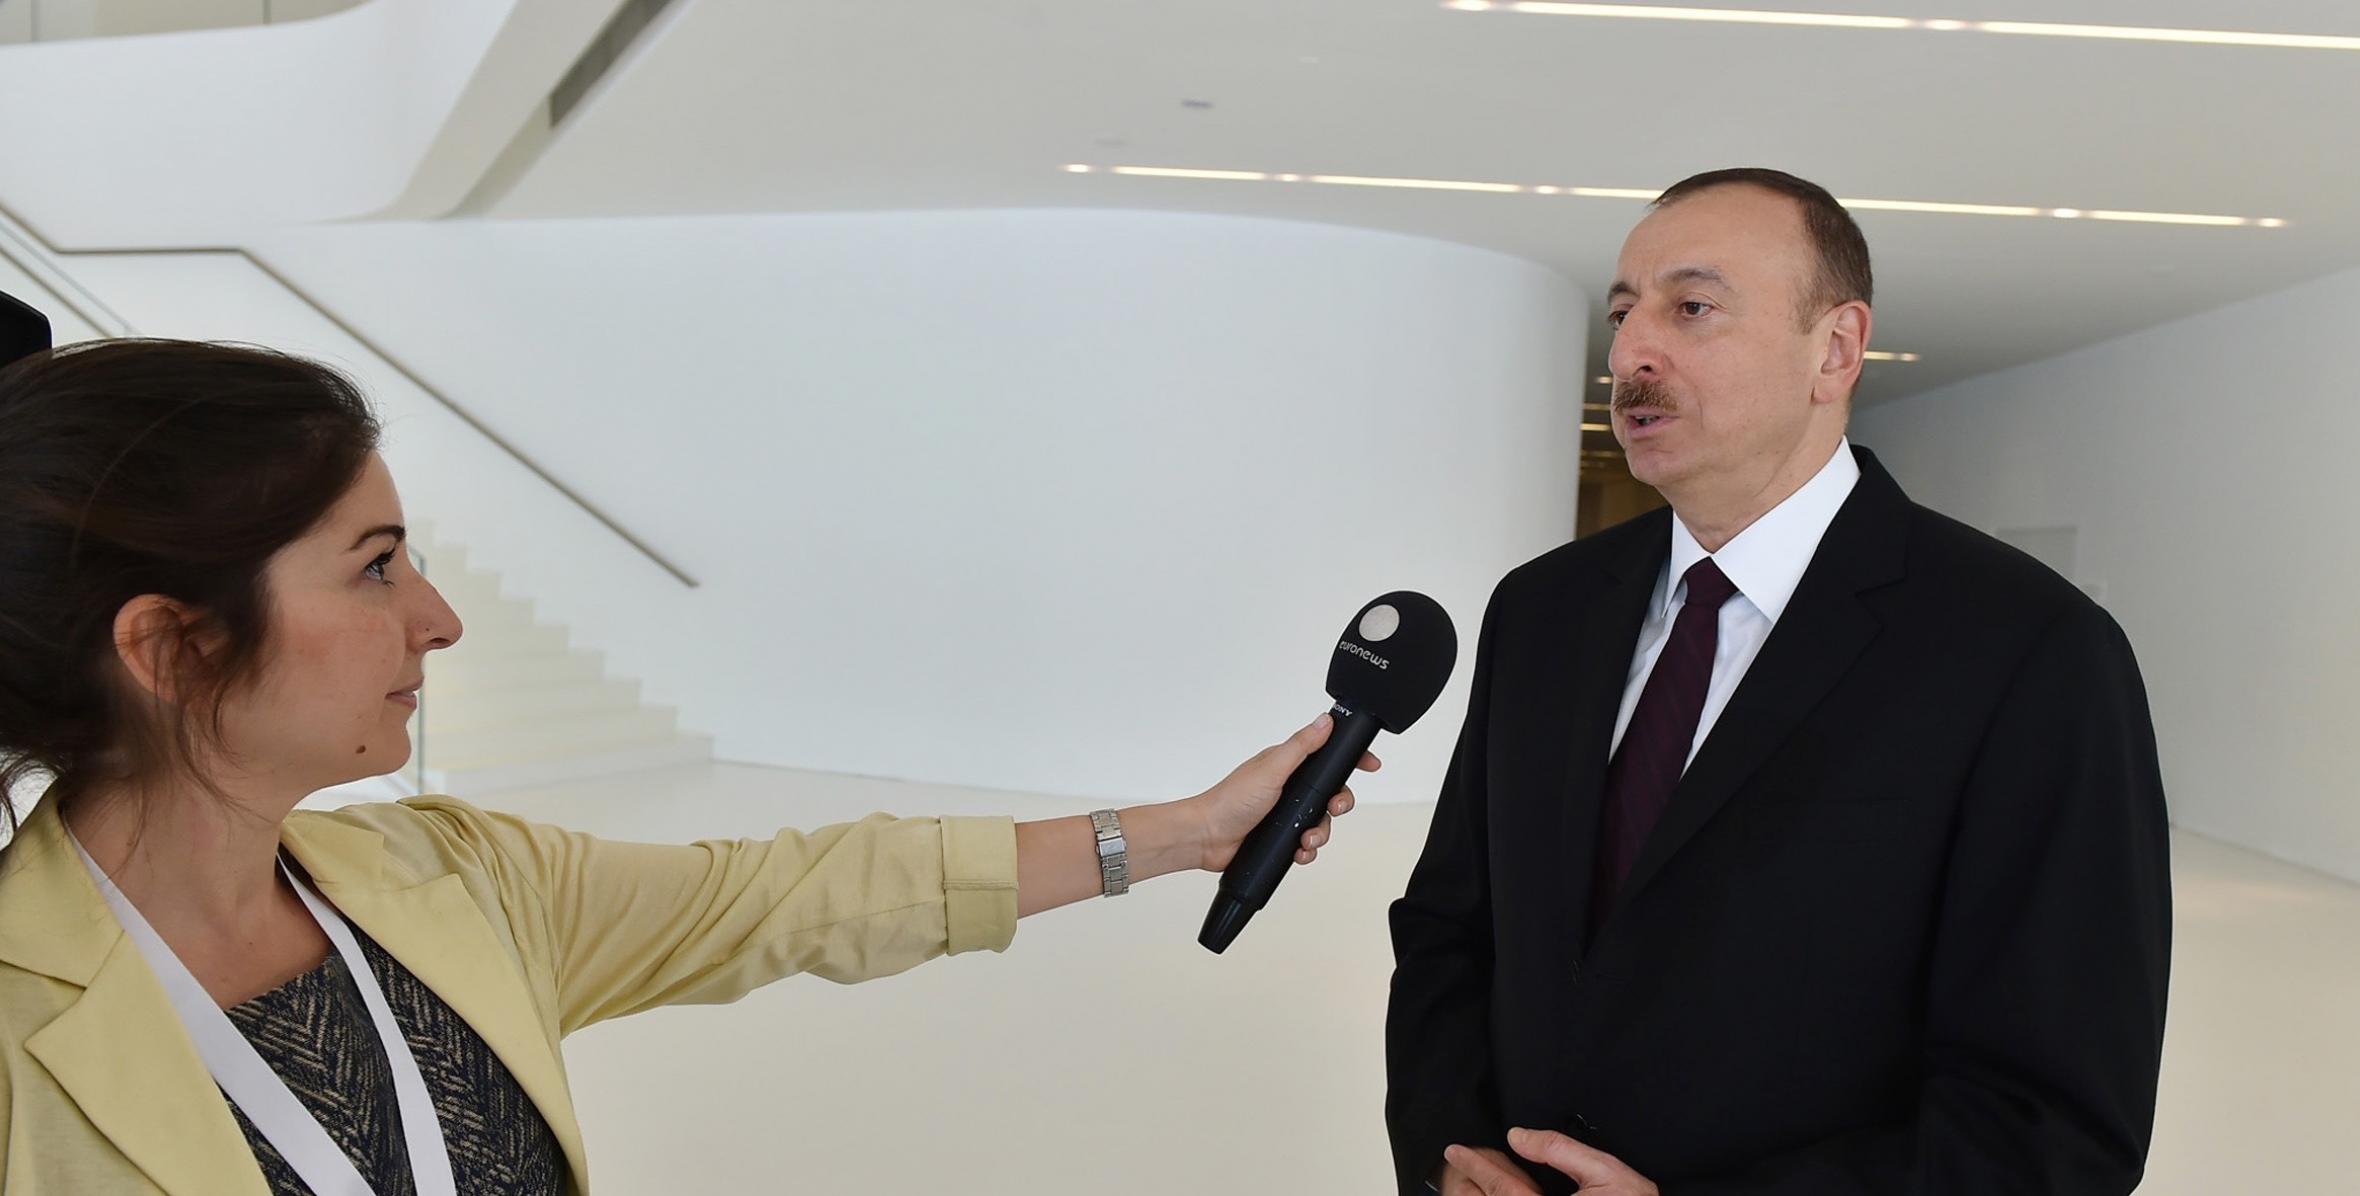 Ilham Aliyev was interviewed by Euronews channel